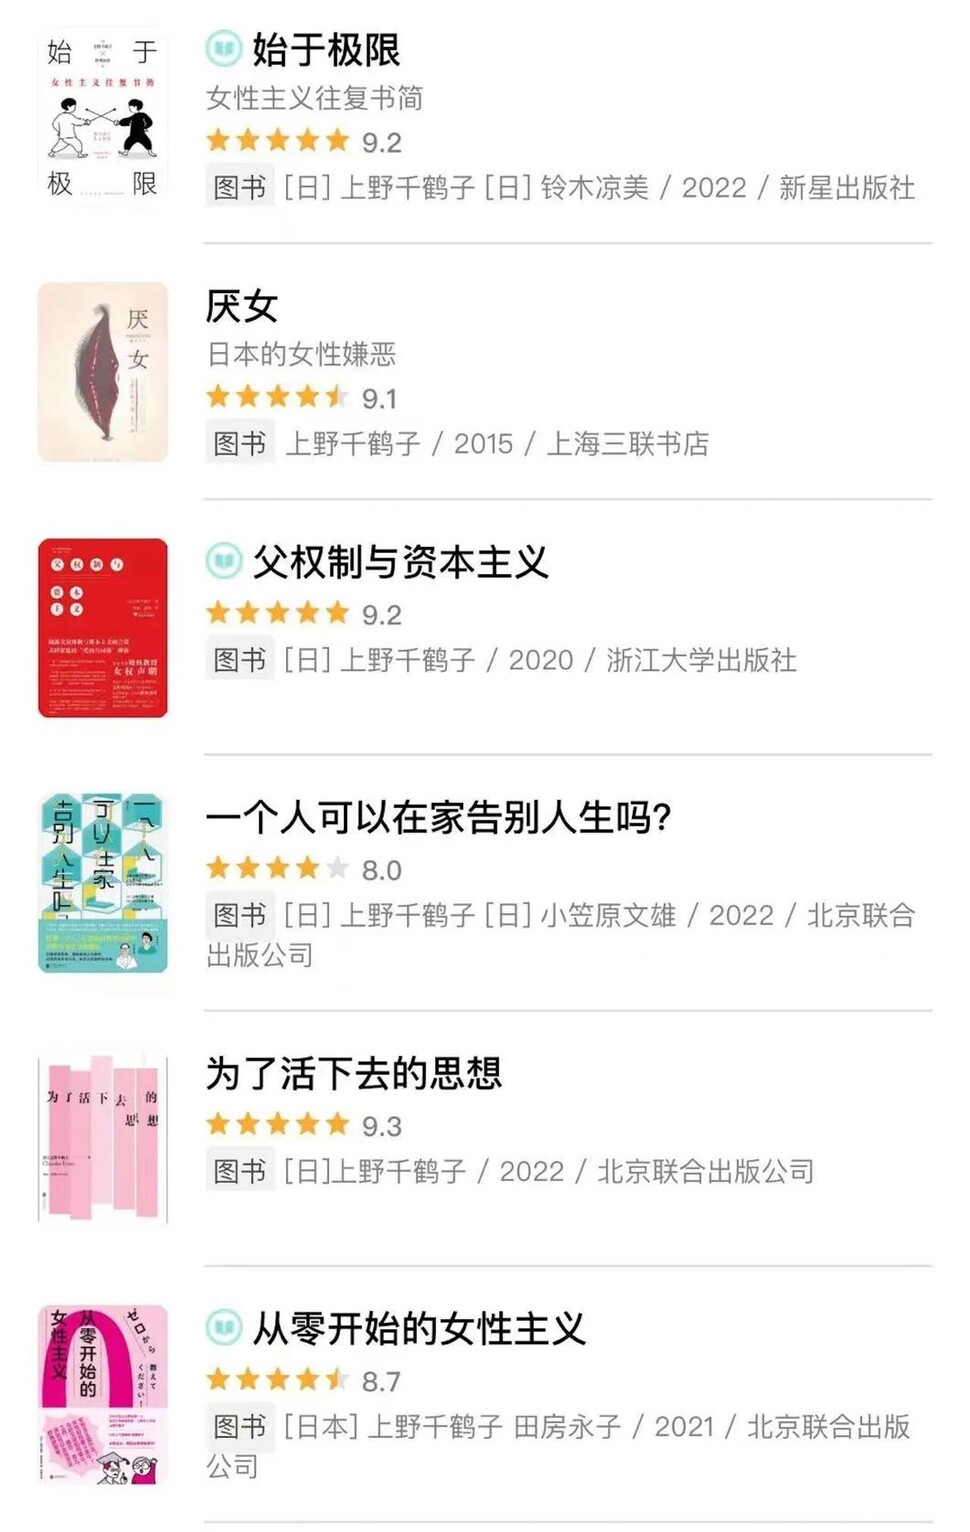 중국어로 출간된 우에노 지즈코의 책들. https://www.hk01.com/ 와이탄 제공 사진 재인용